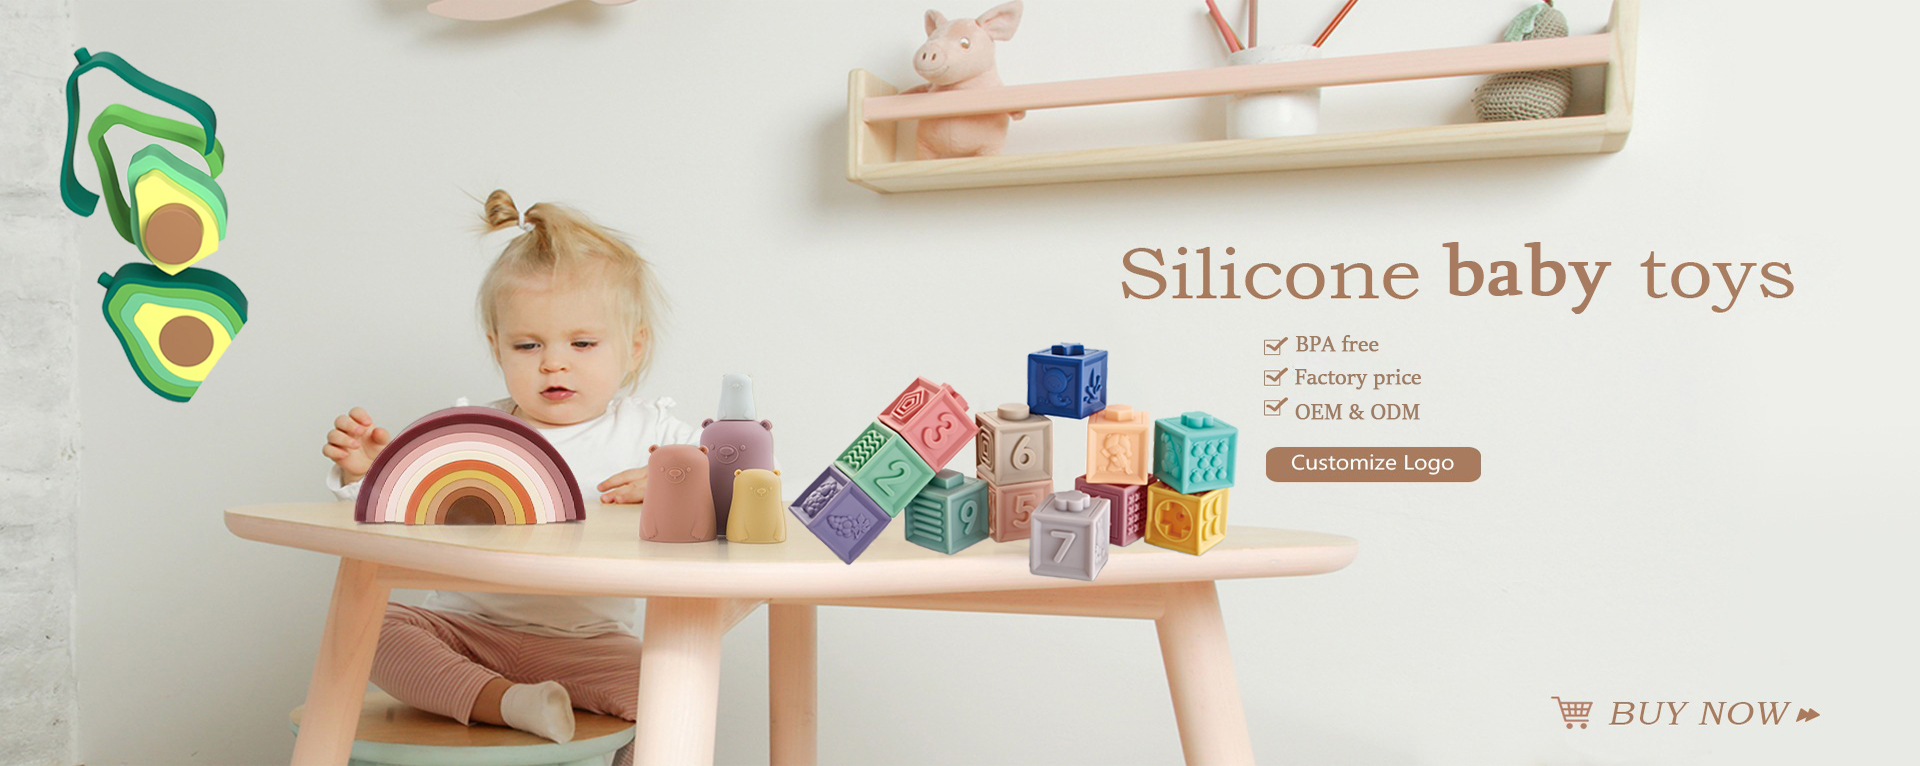 juguetes de silicona para bebés